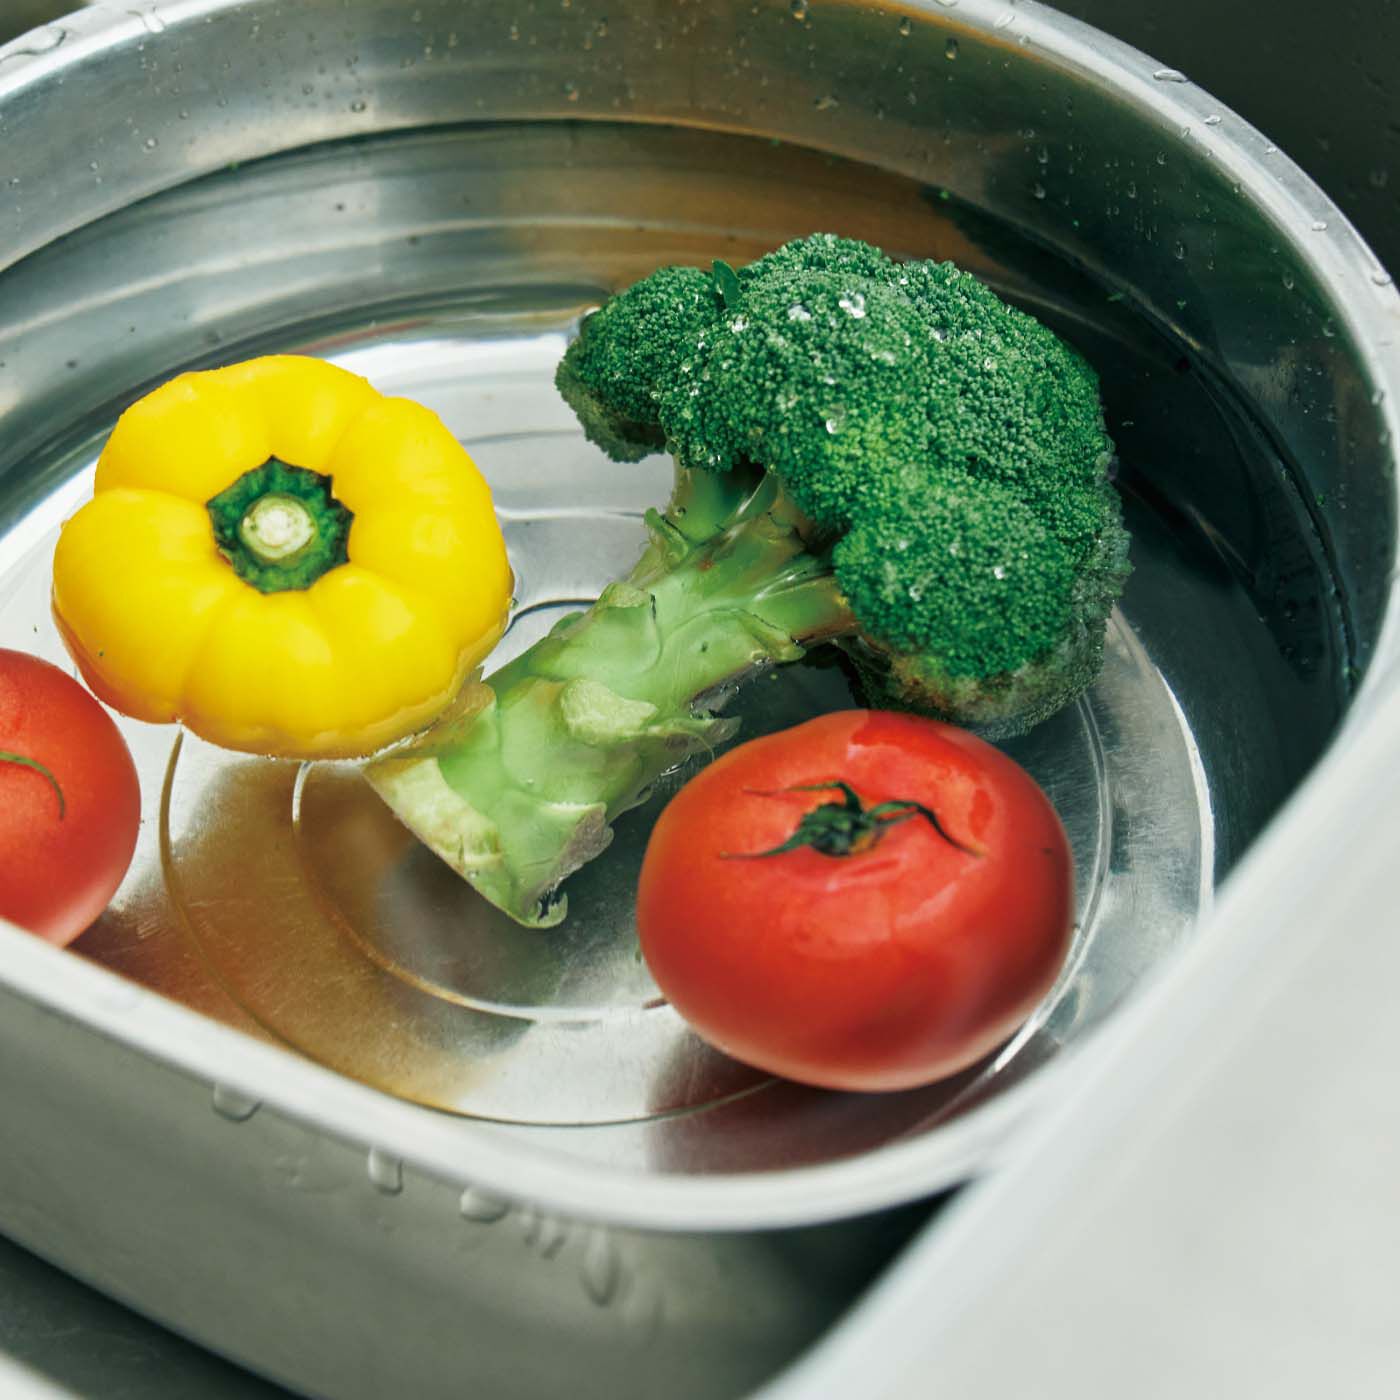 フェリシモの雑貨 Kraso|1/d DISH SOAP 食器用洗剤の会|薄めて野菜の洗浄にも